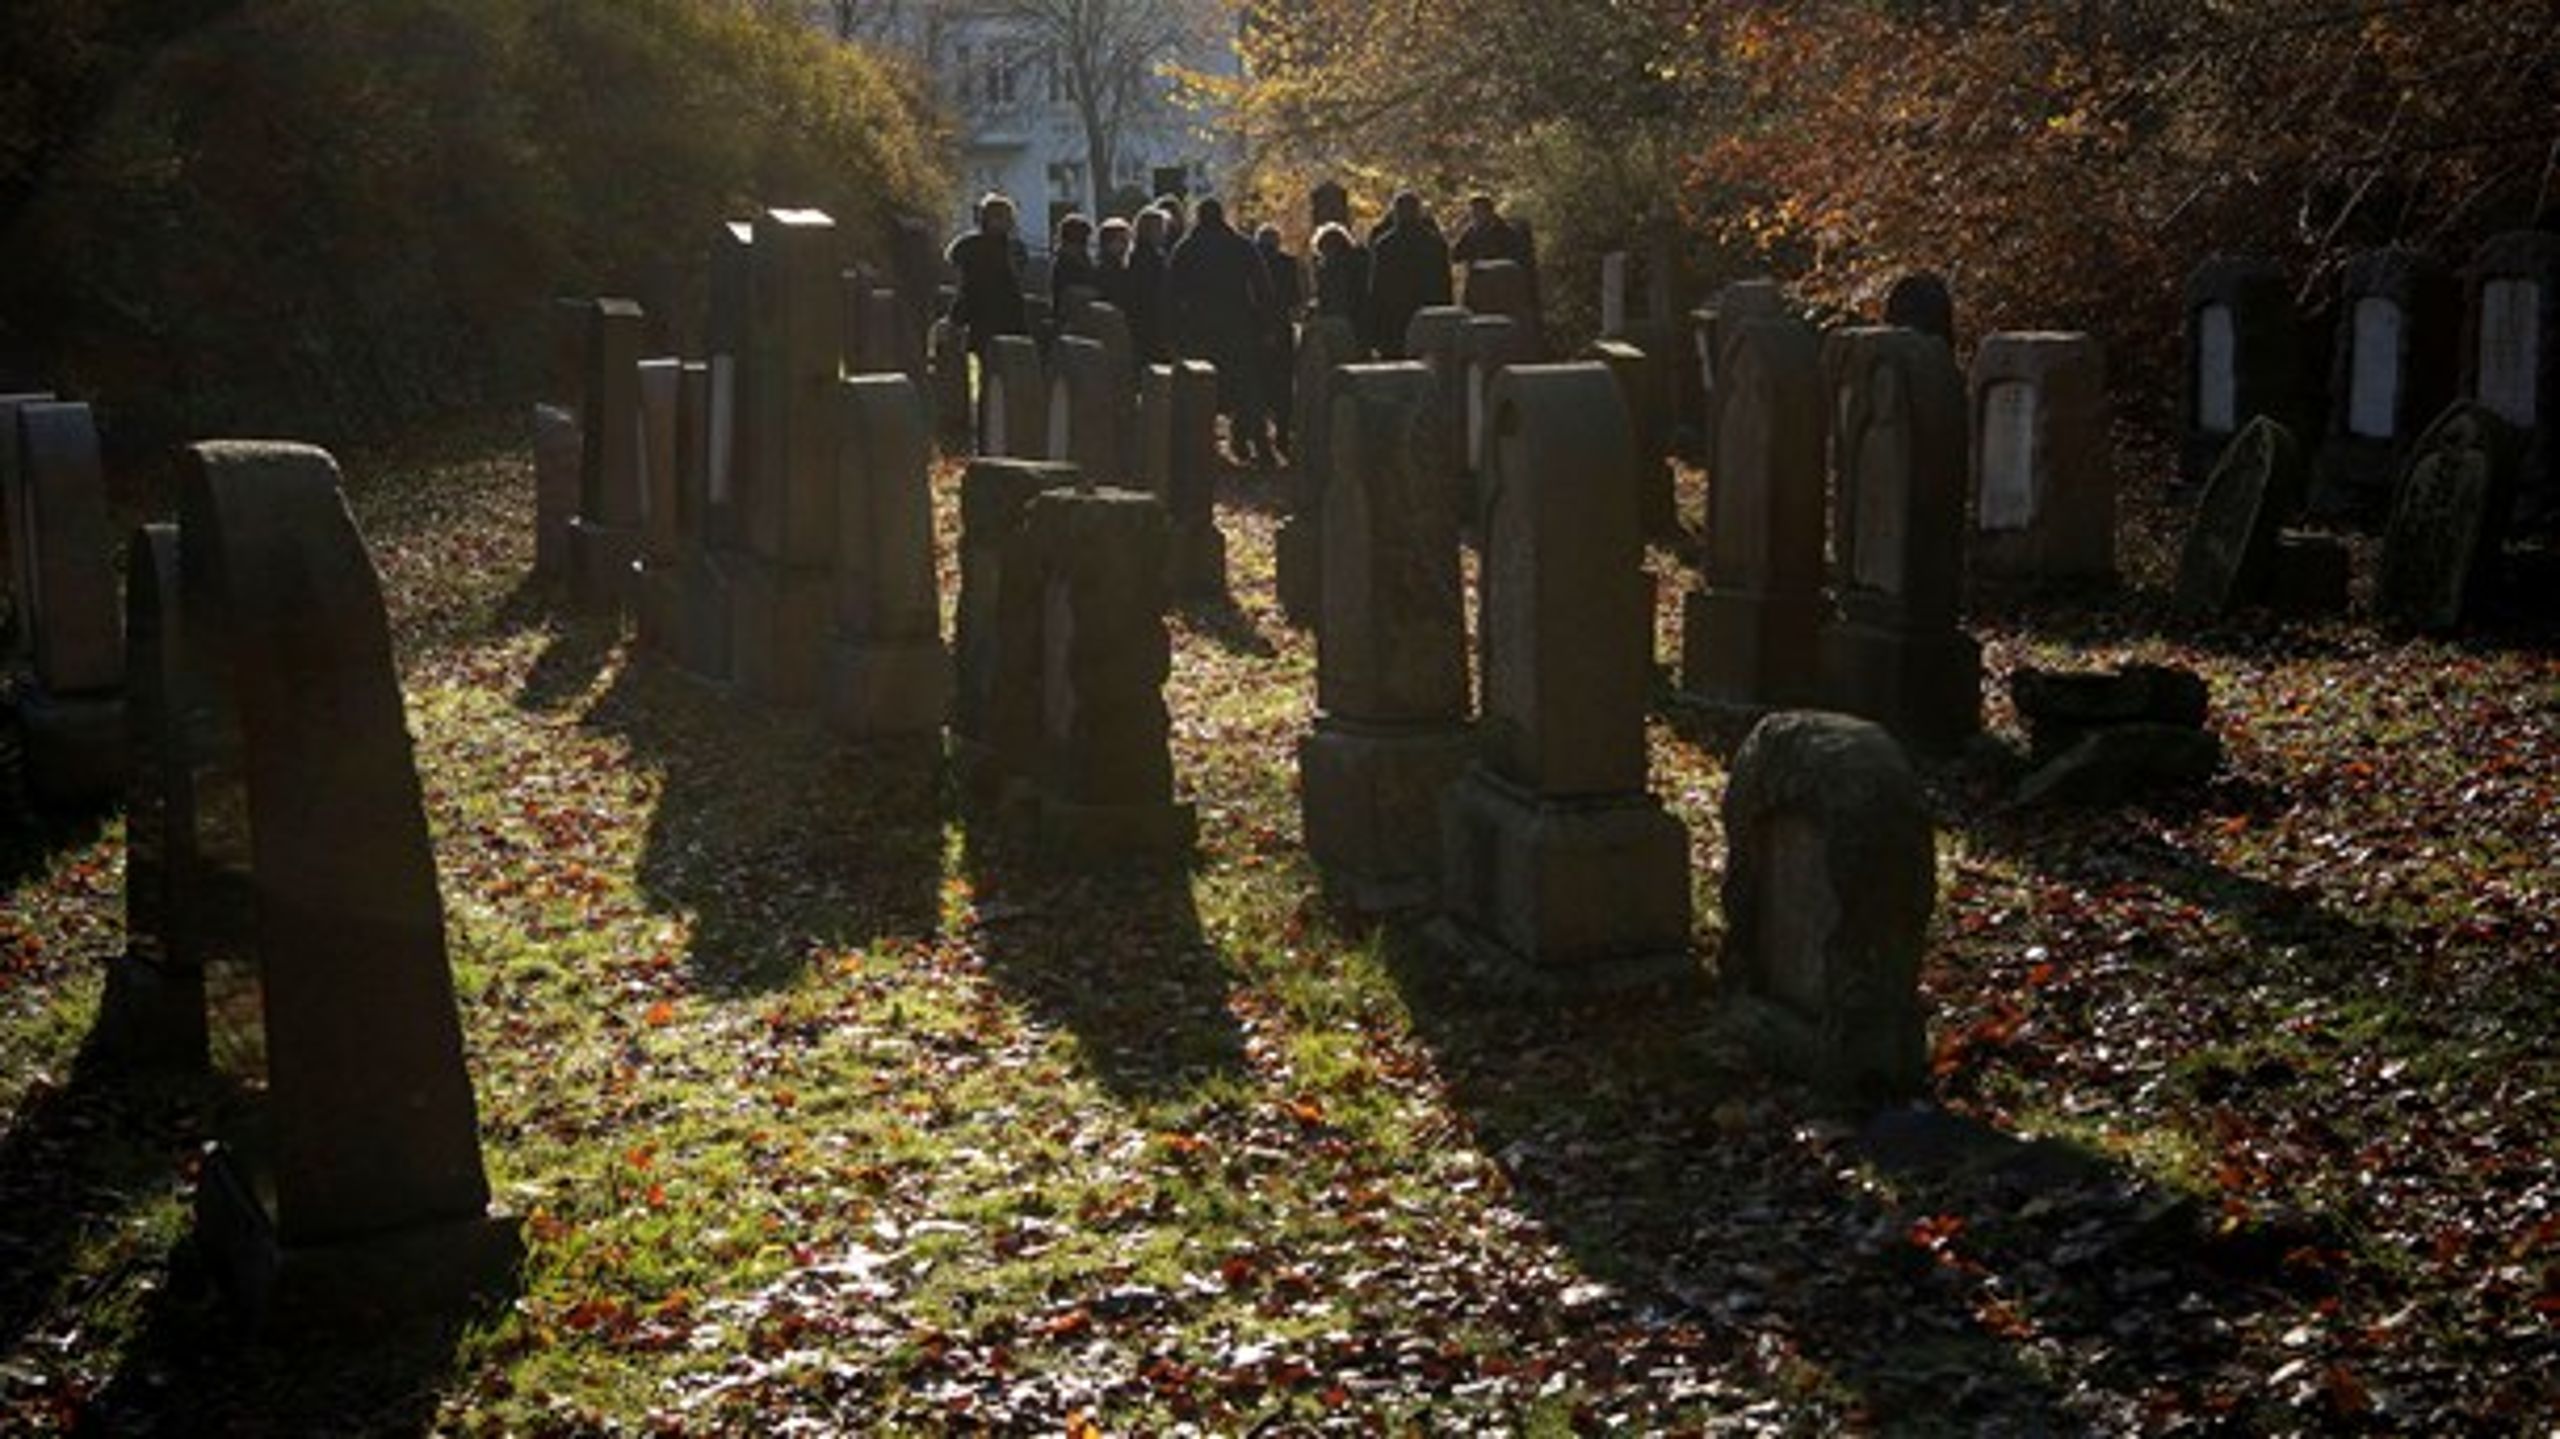 Hvad for et menneske er man, hvis man er i stand til at gå ind på en kirkegård og skænde 84 grave? skriver Jens Christian Grøndahl.